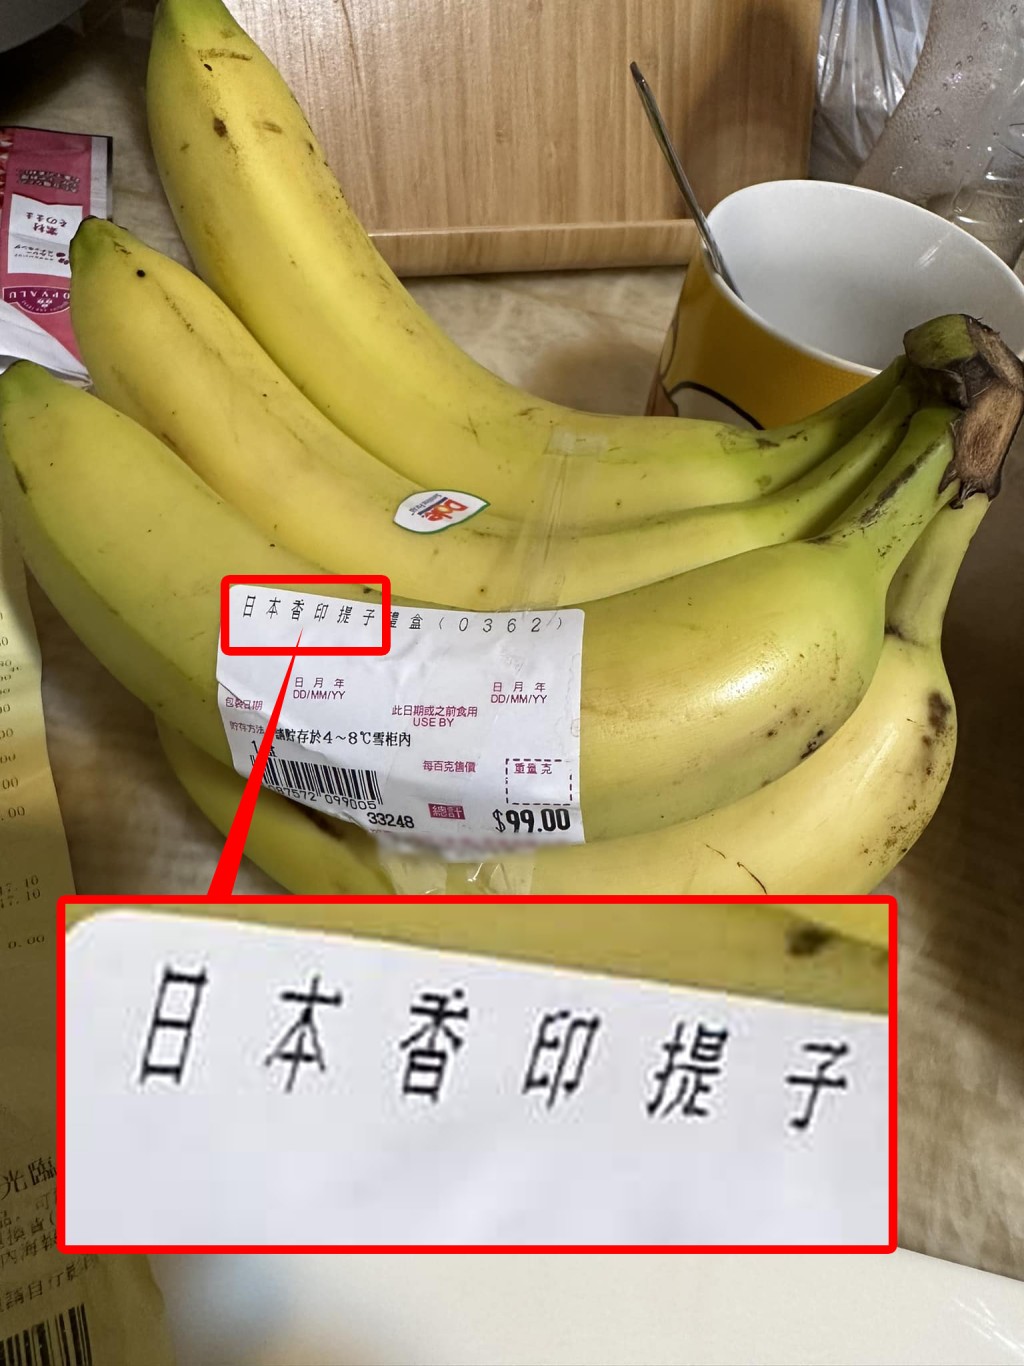 香蕉的價錢標籤上印有「日本香印提子」字眼。